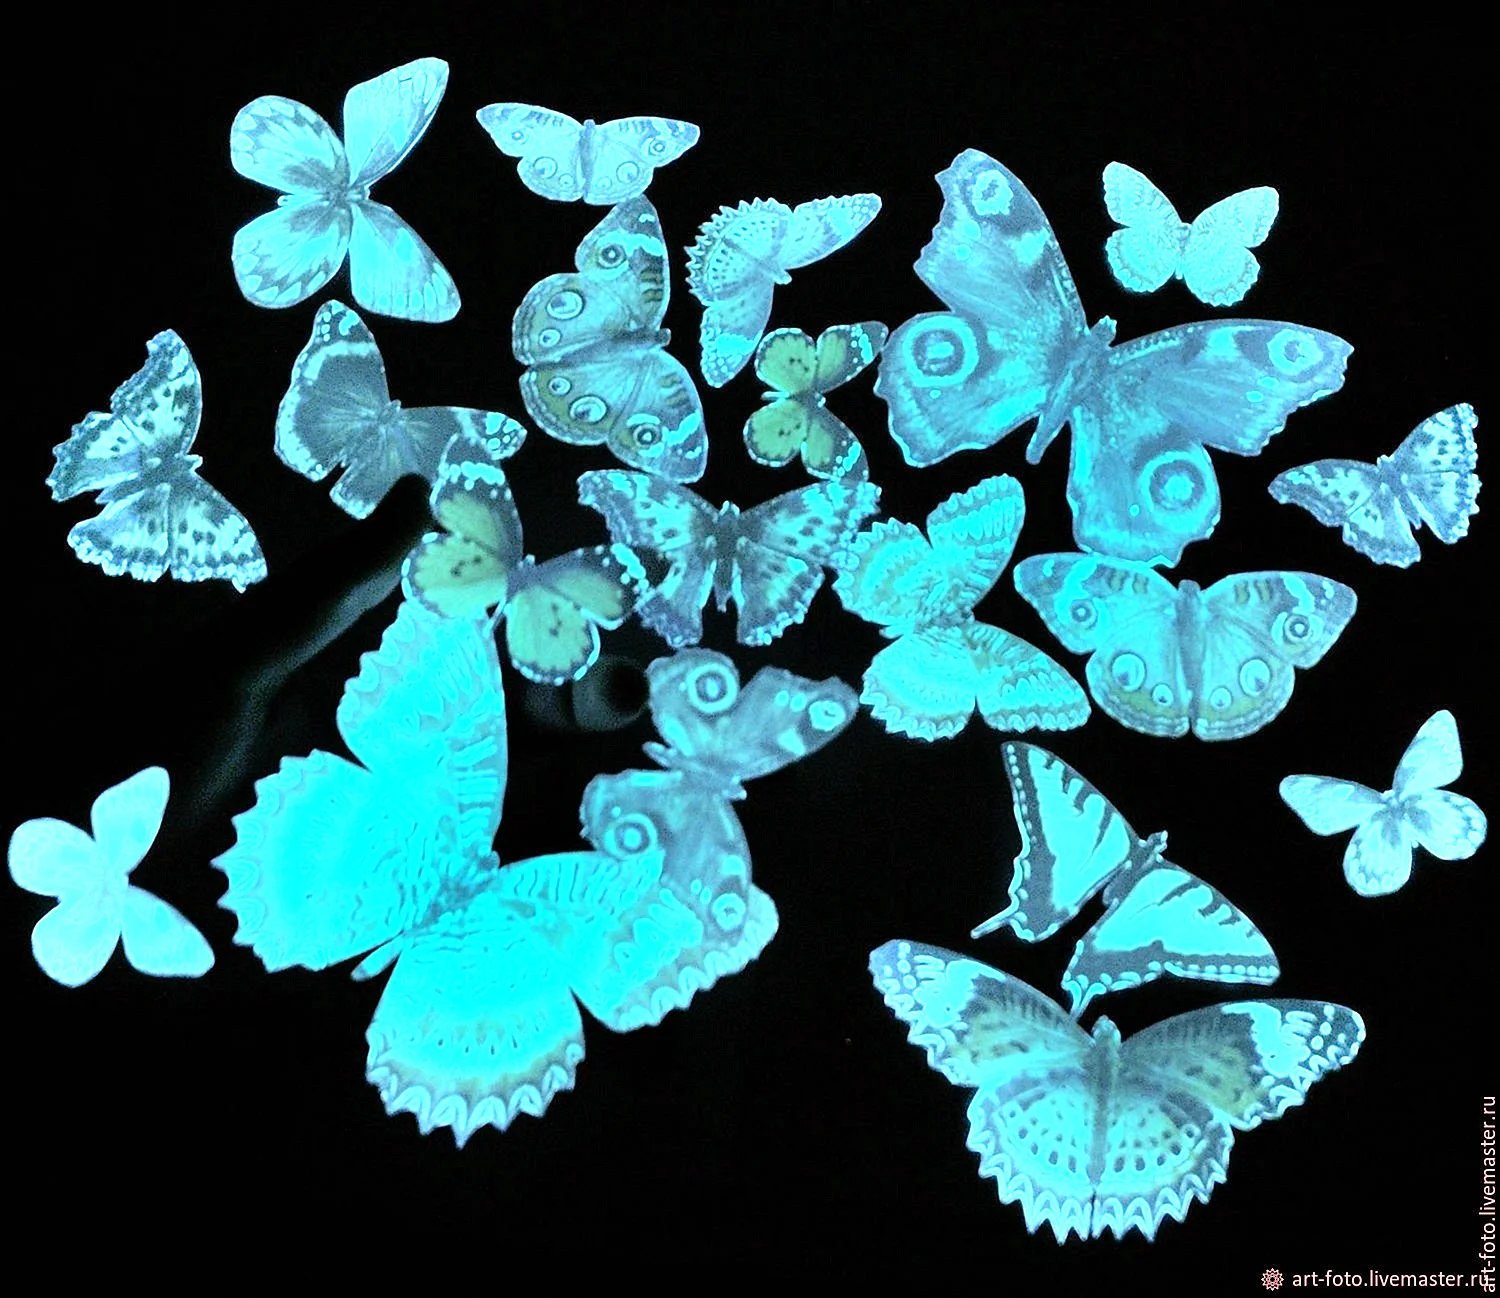 Glowing Butterfly Wallpaper